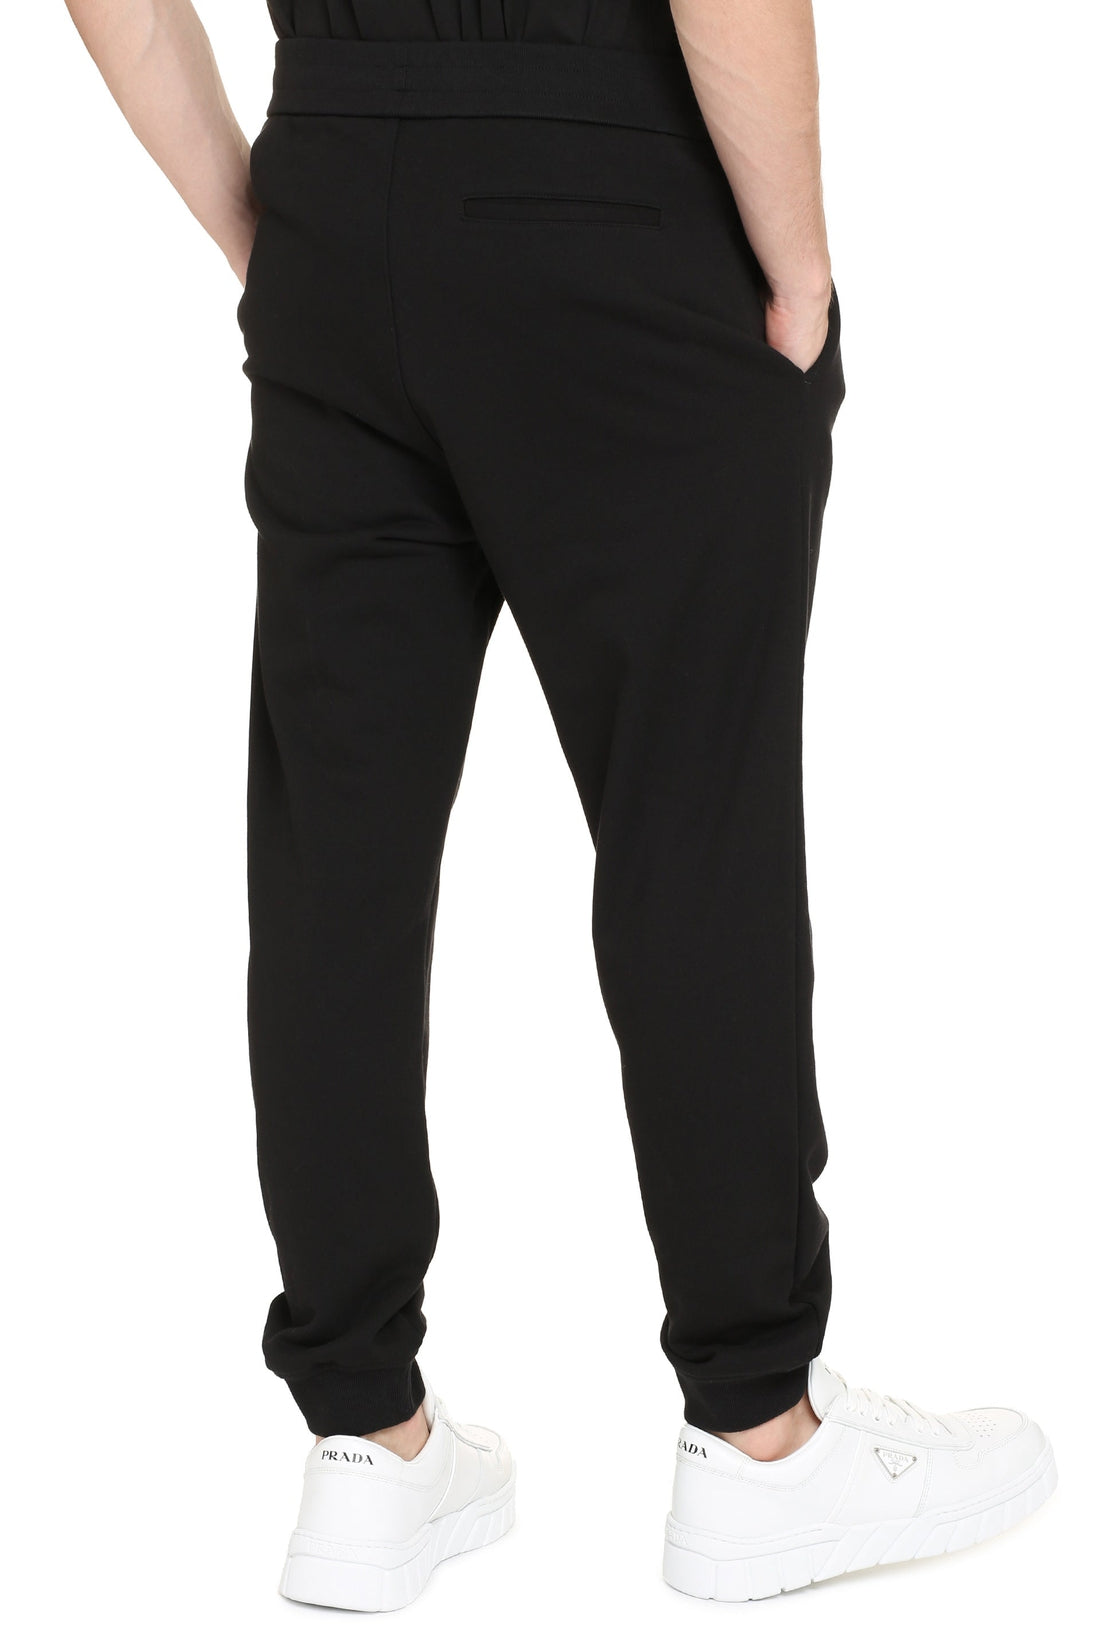 Versace-OUTLET-SALE-Logo print sweatpants-ARCHIVIST